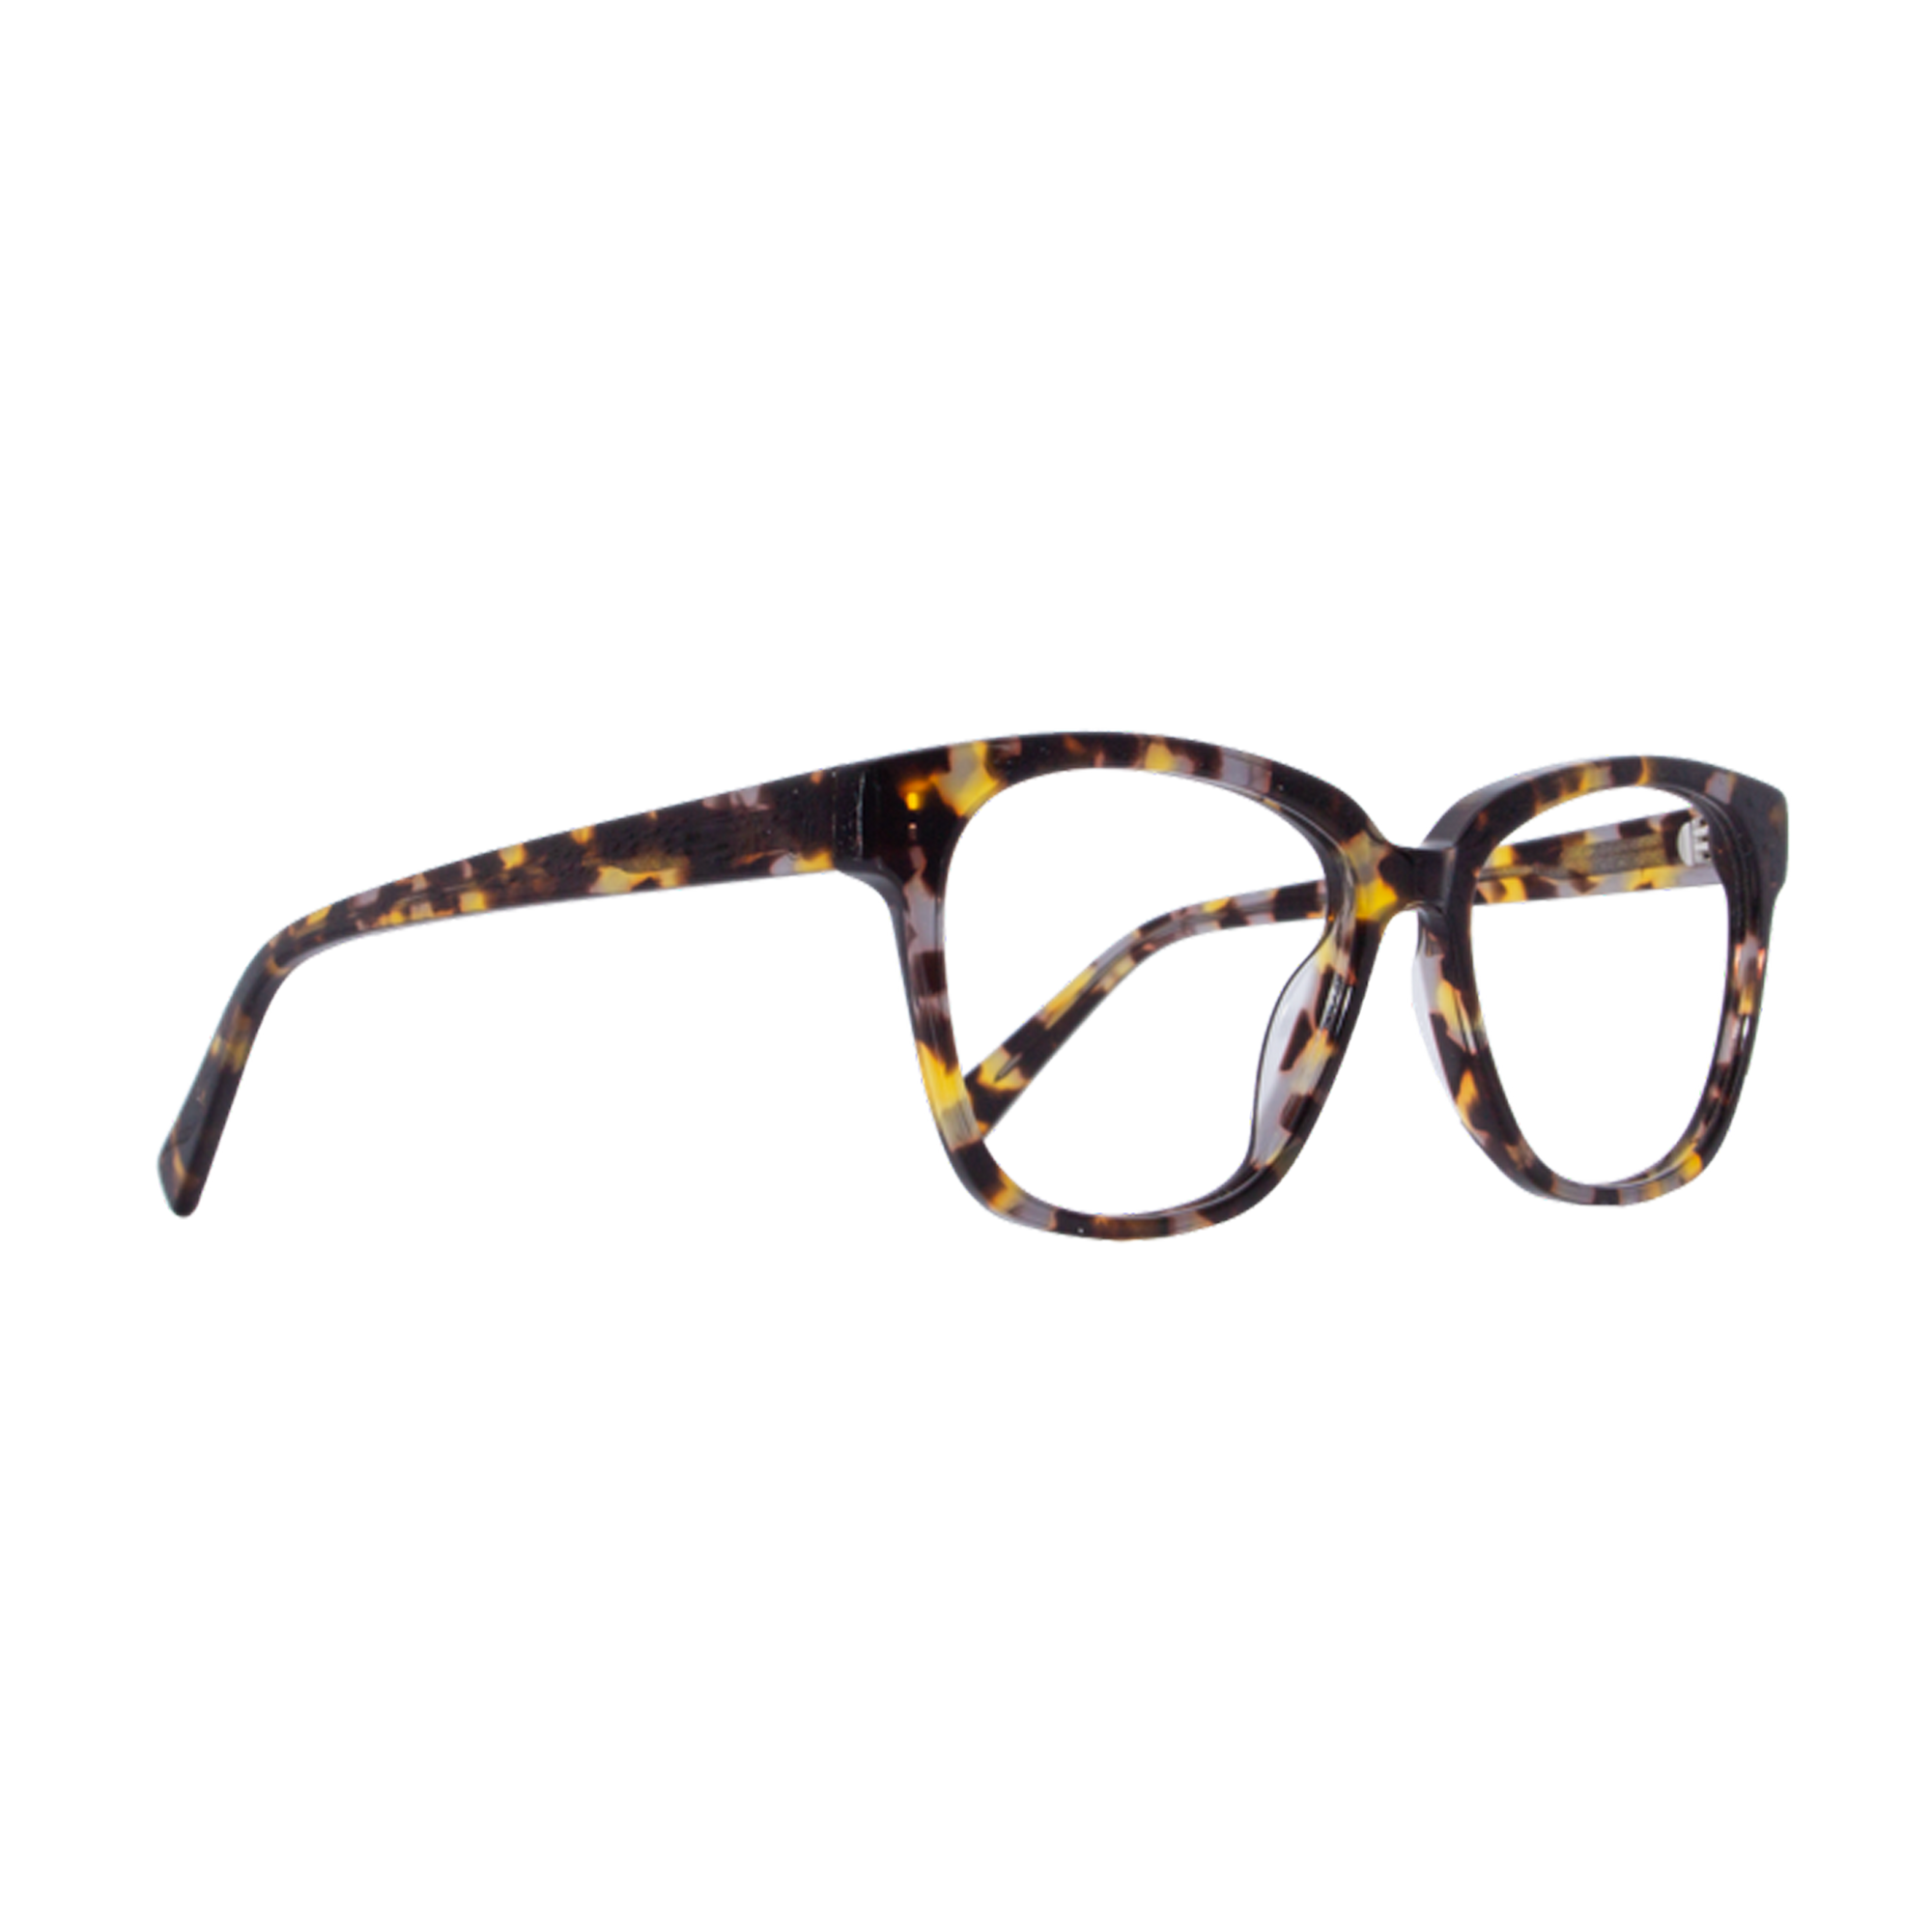 Fifer | Sunglasses